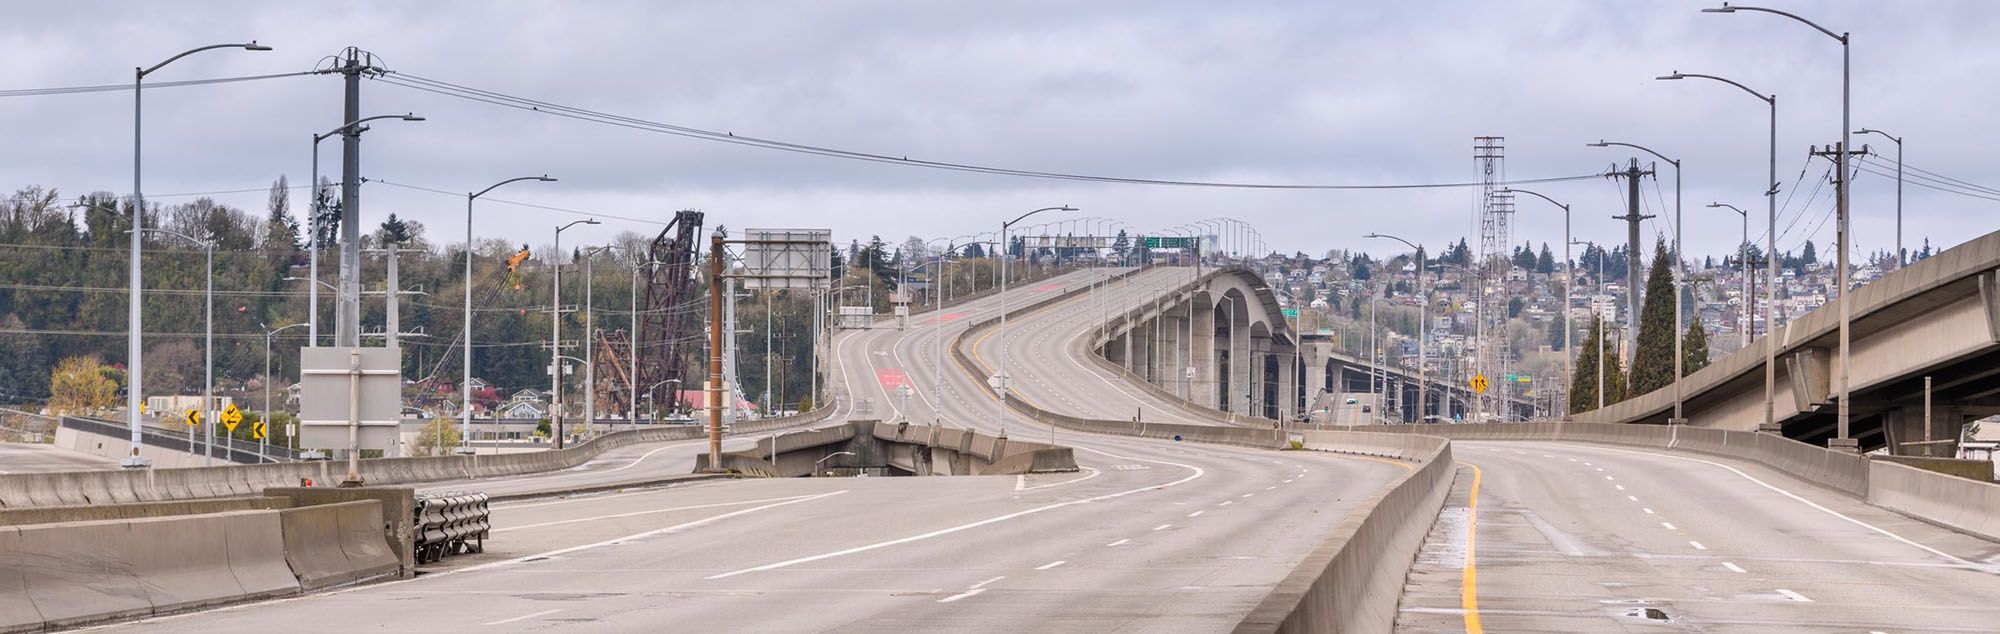  West Seattle Bridge 